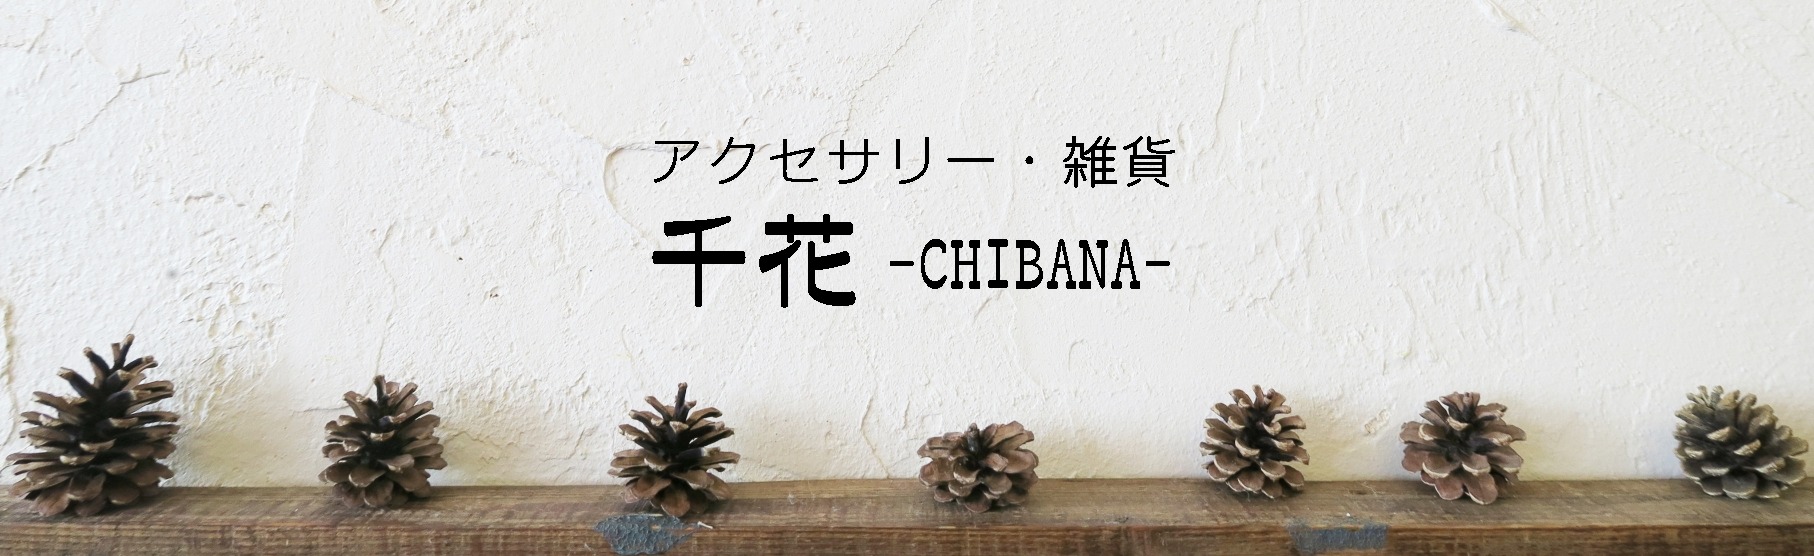 千花 -CHIBANA- 【雑貨とアクセサリーの店】